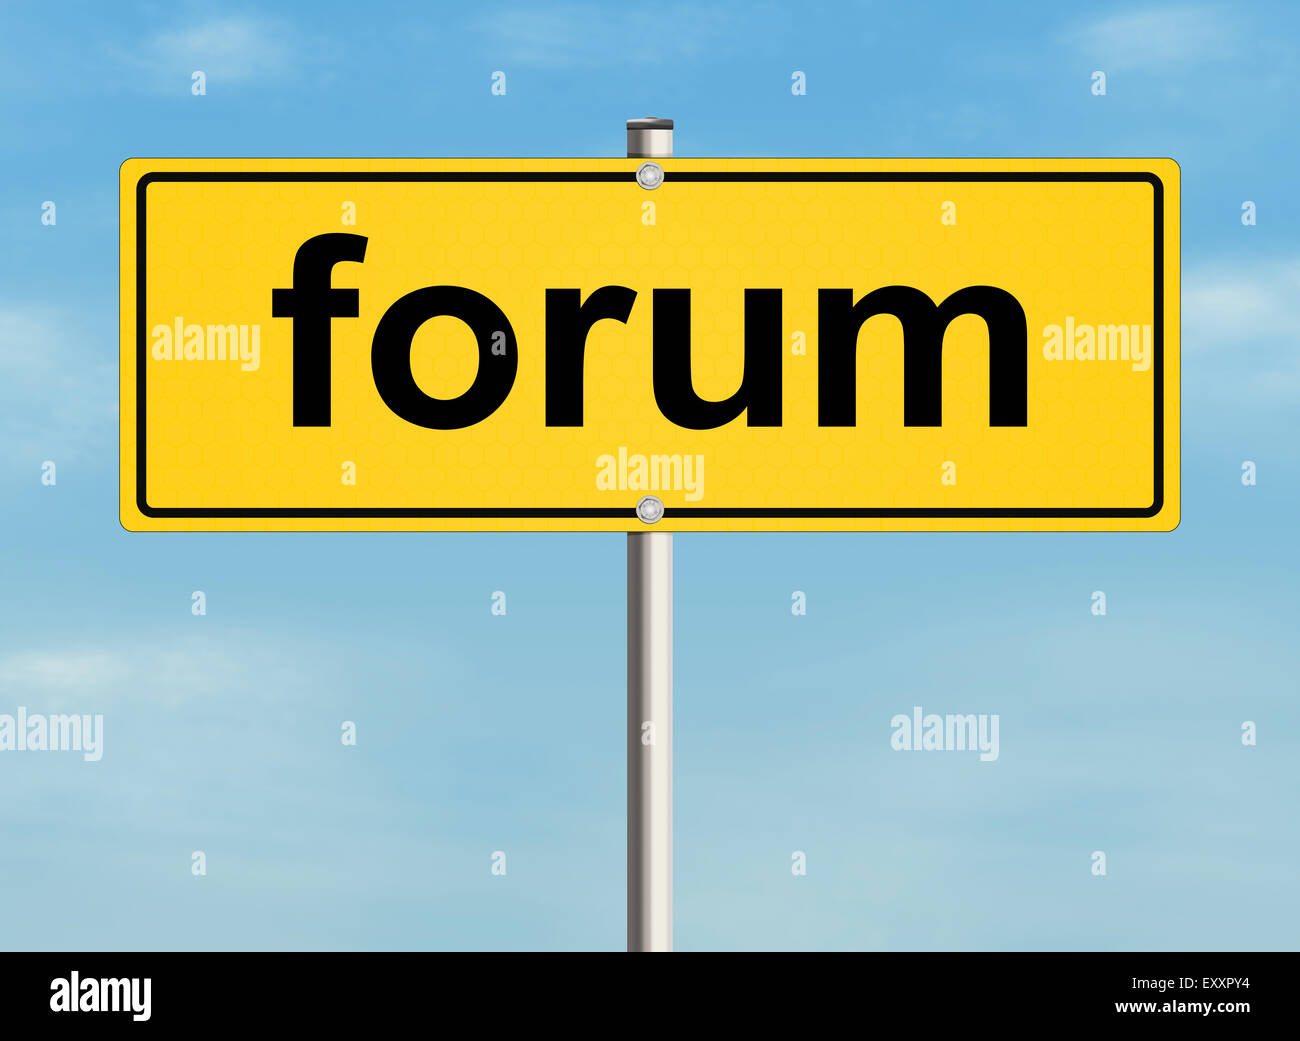 Forum. Straßenschild an der Himmelshintergrund. Raster-Abbildung. Stockfoto